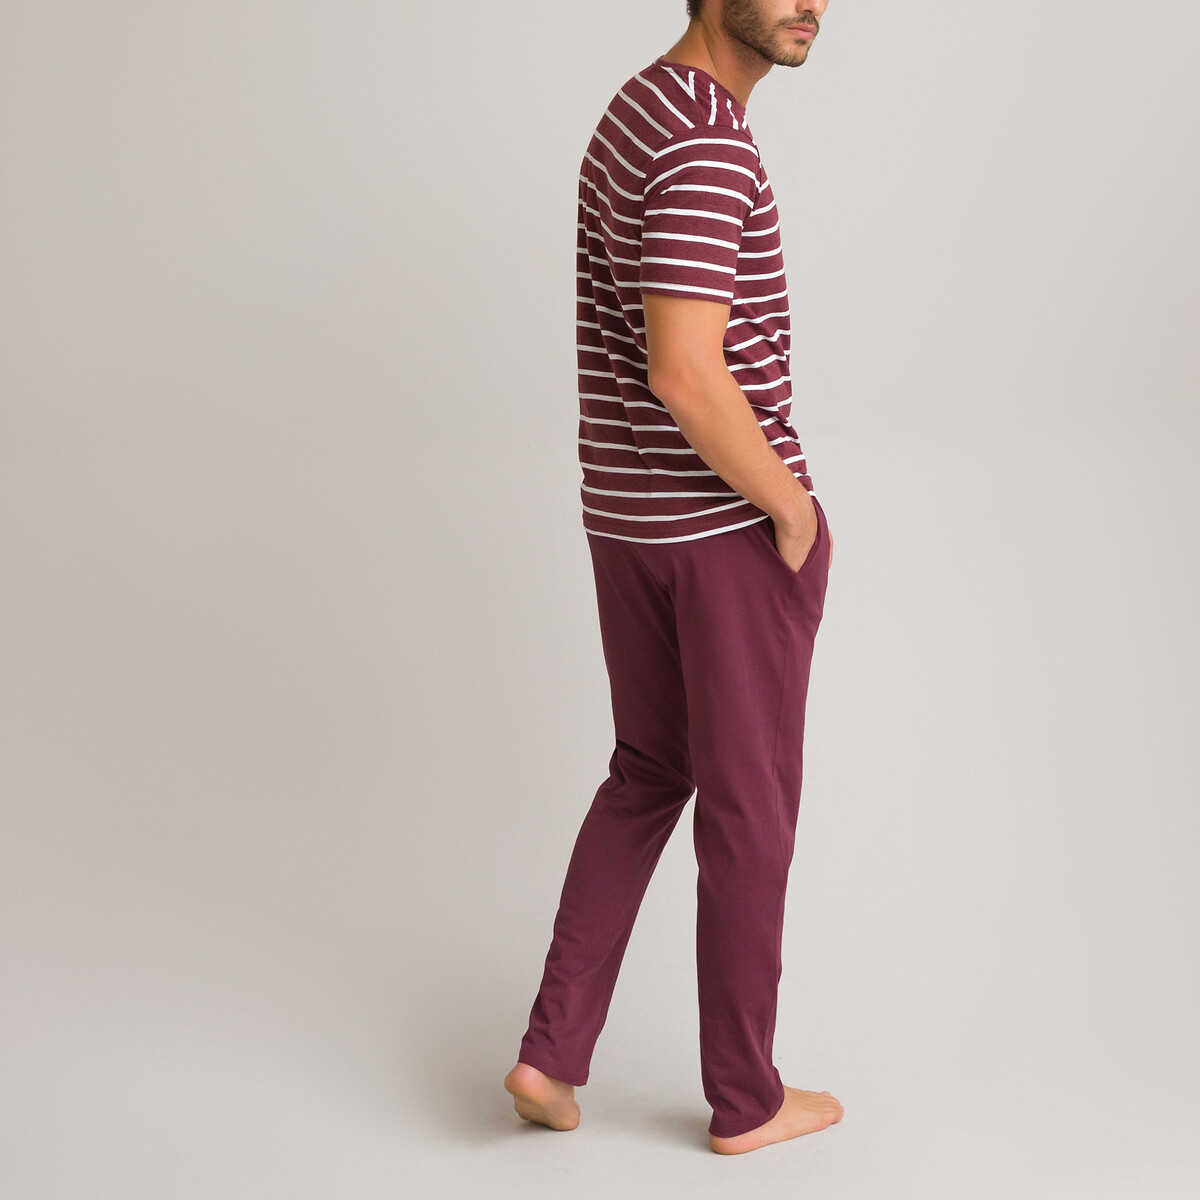 Пижама LaRedoute С короткими рукавами из биохлопка XL красный, размер XL - фото 4